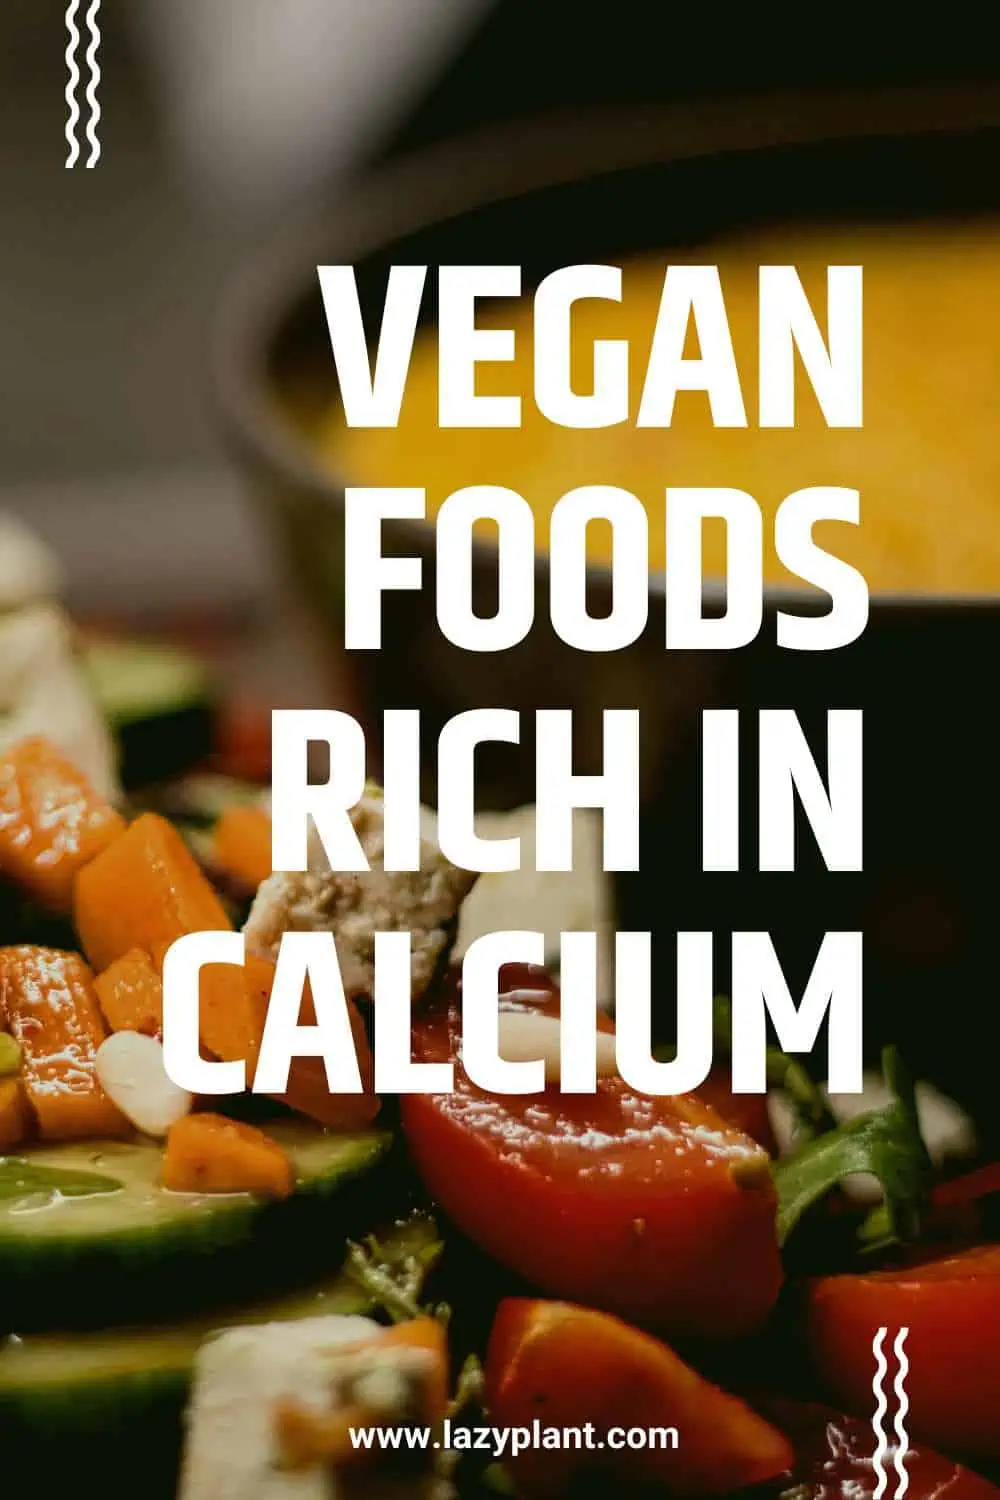 List of common vegan foods high in calcium.